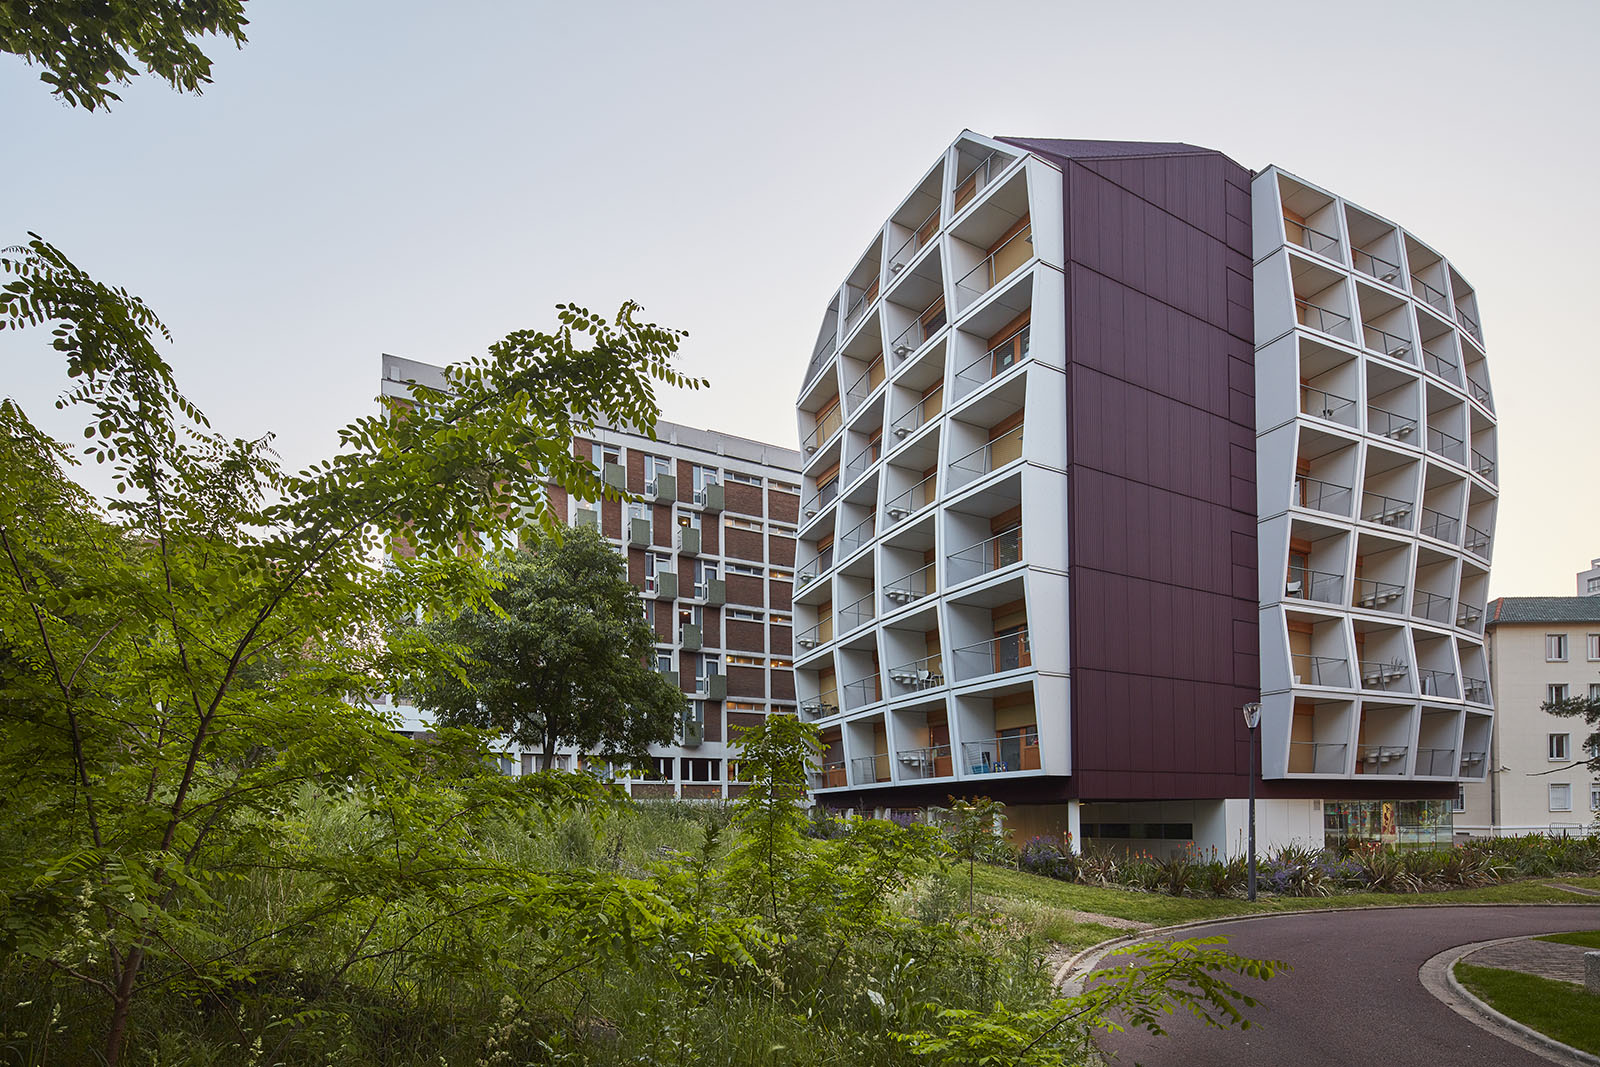 Maison de l'Inde, Cité Universitaire Internationale Lipsky Rollet architecture et environnement architecte florence lipsky pascal rollet paris france 